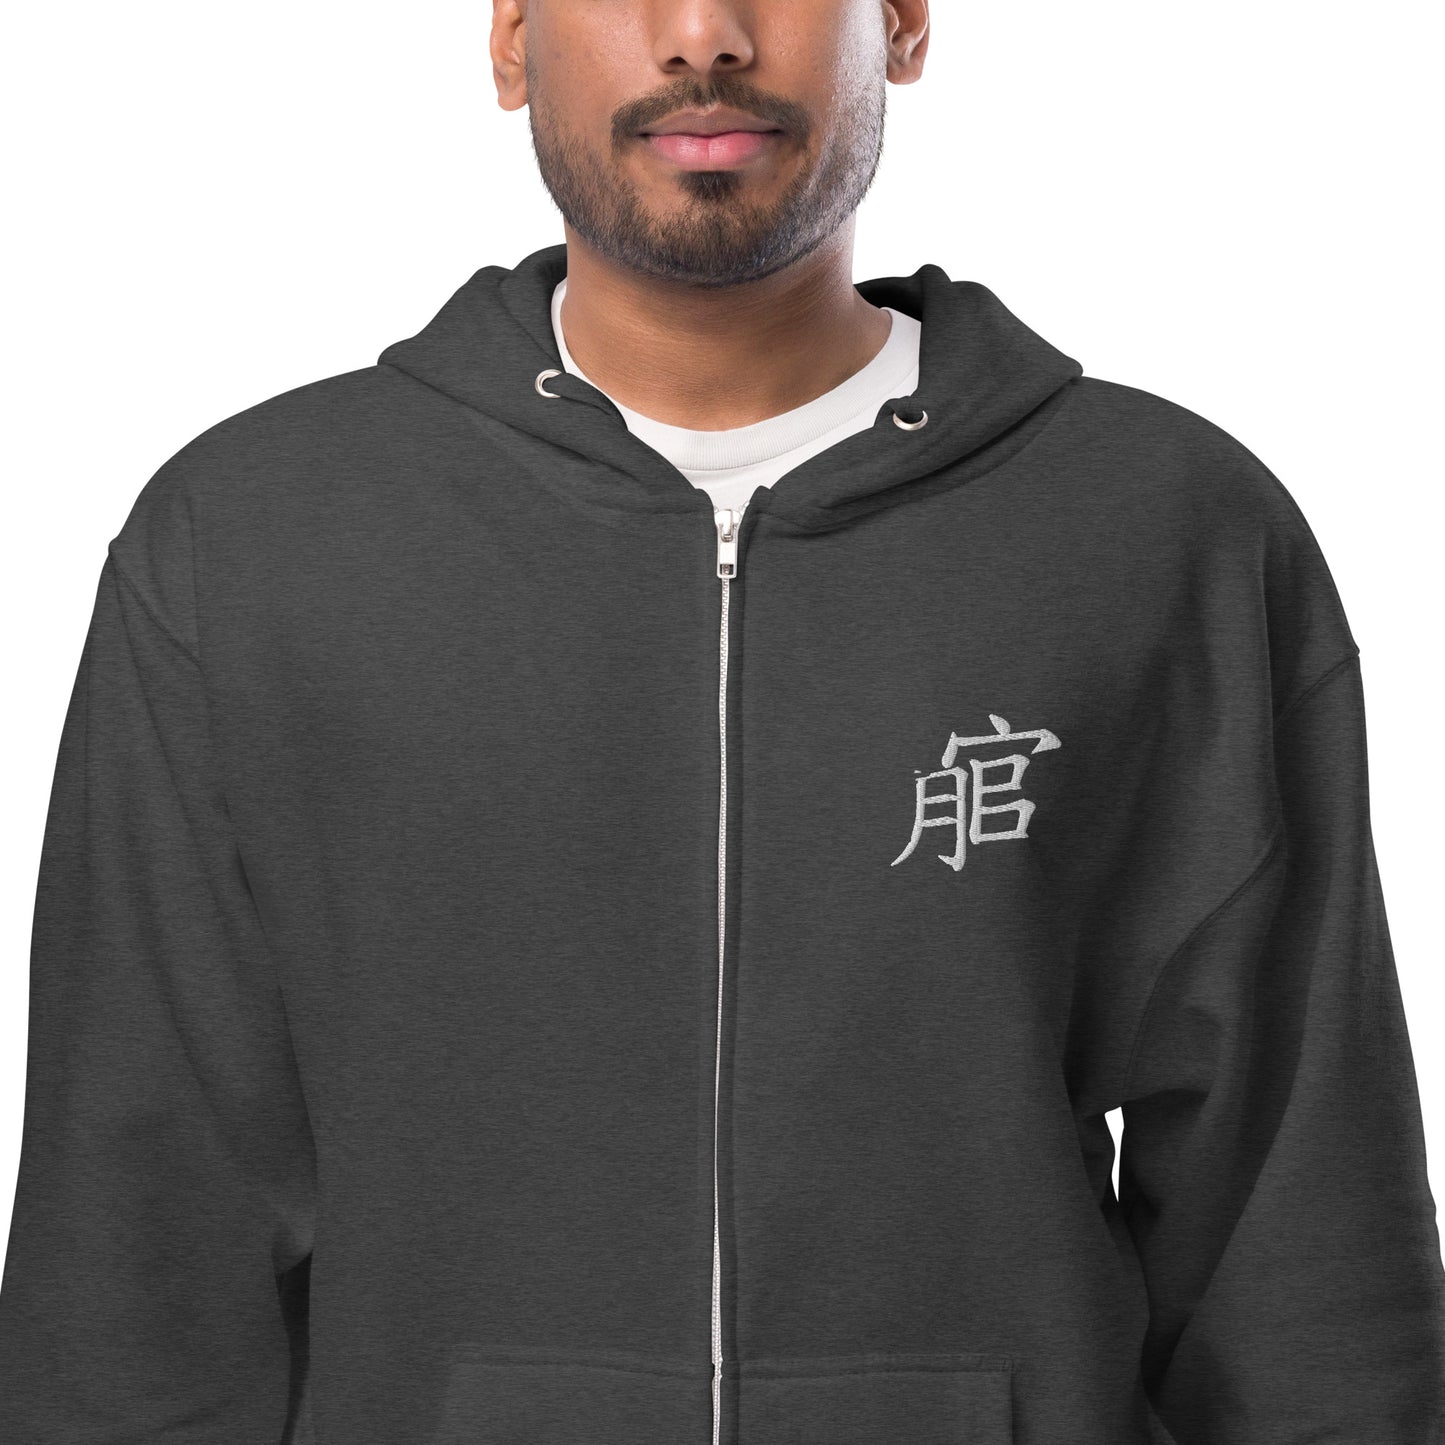 Andreco B.fleece zip up hoodie